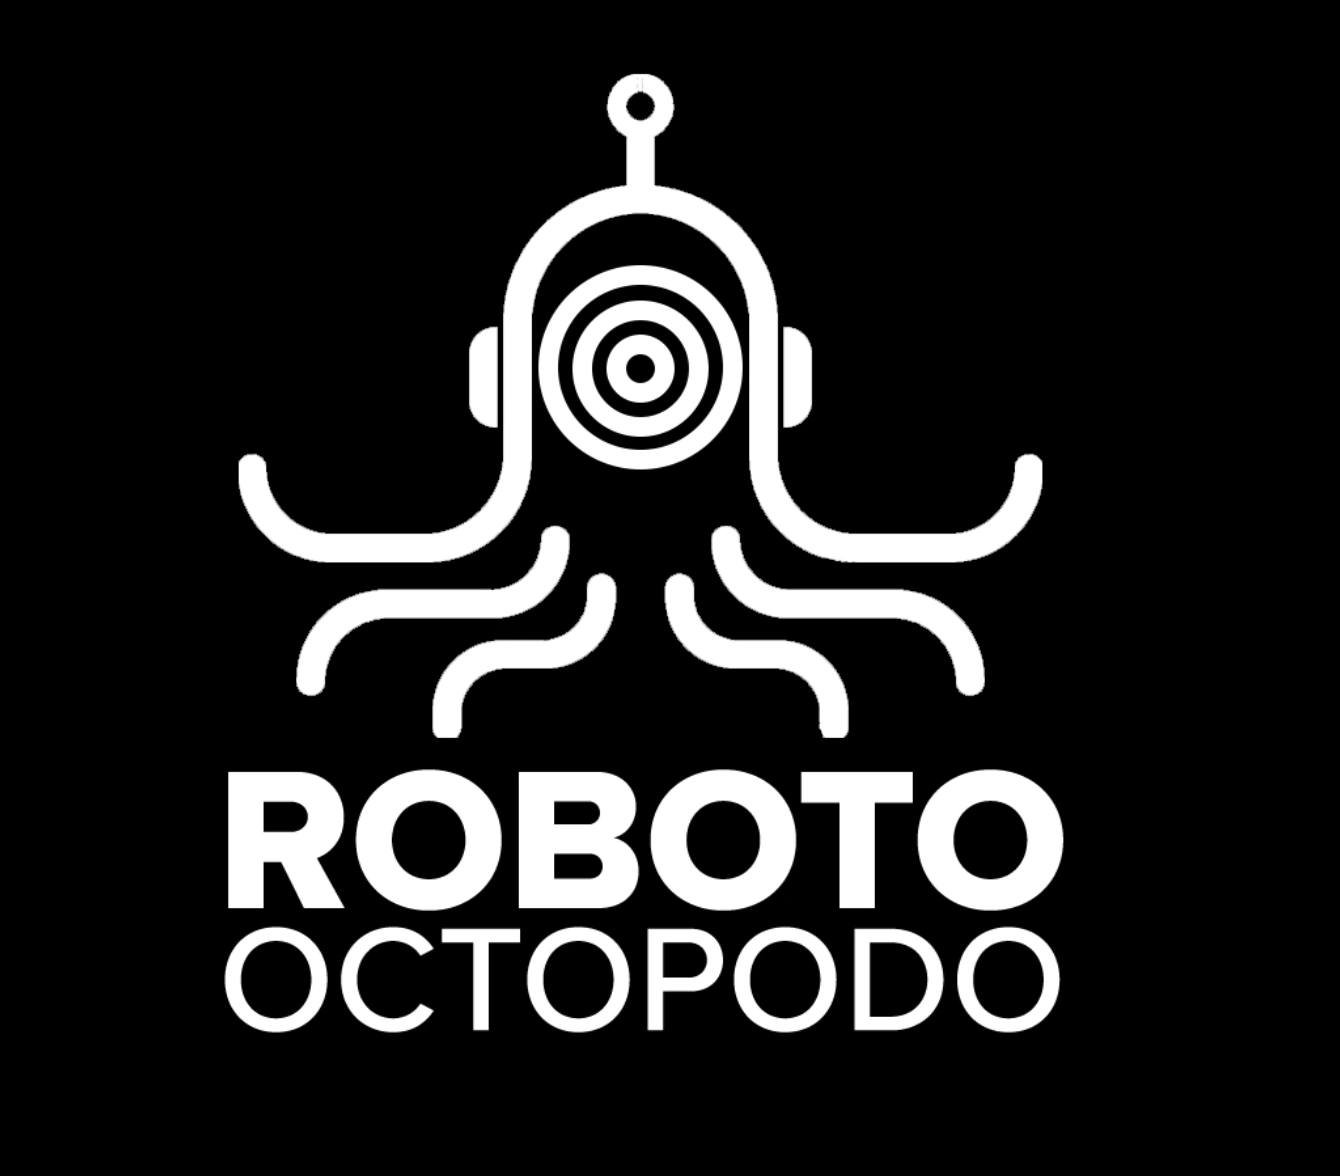 Roboto Octopodo - FATHOM Immersive Art World Premiere in Downtown Portland